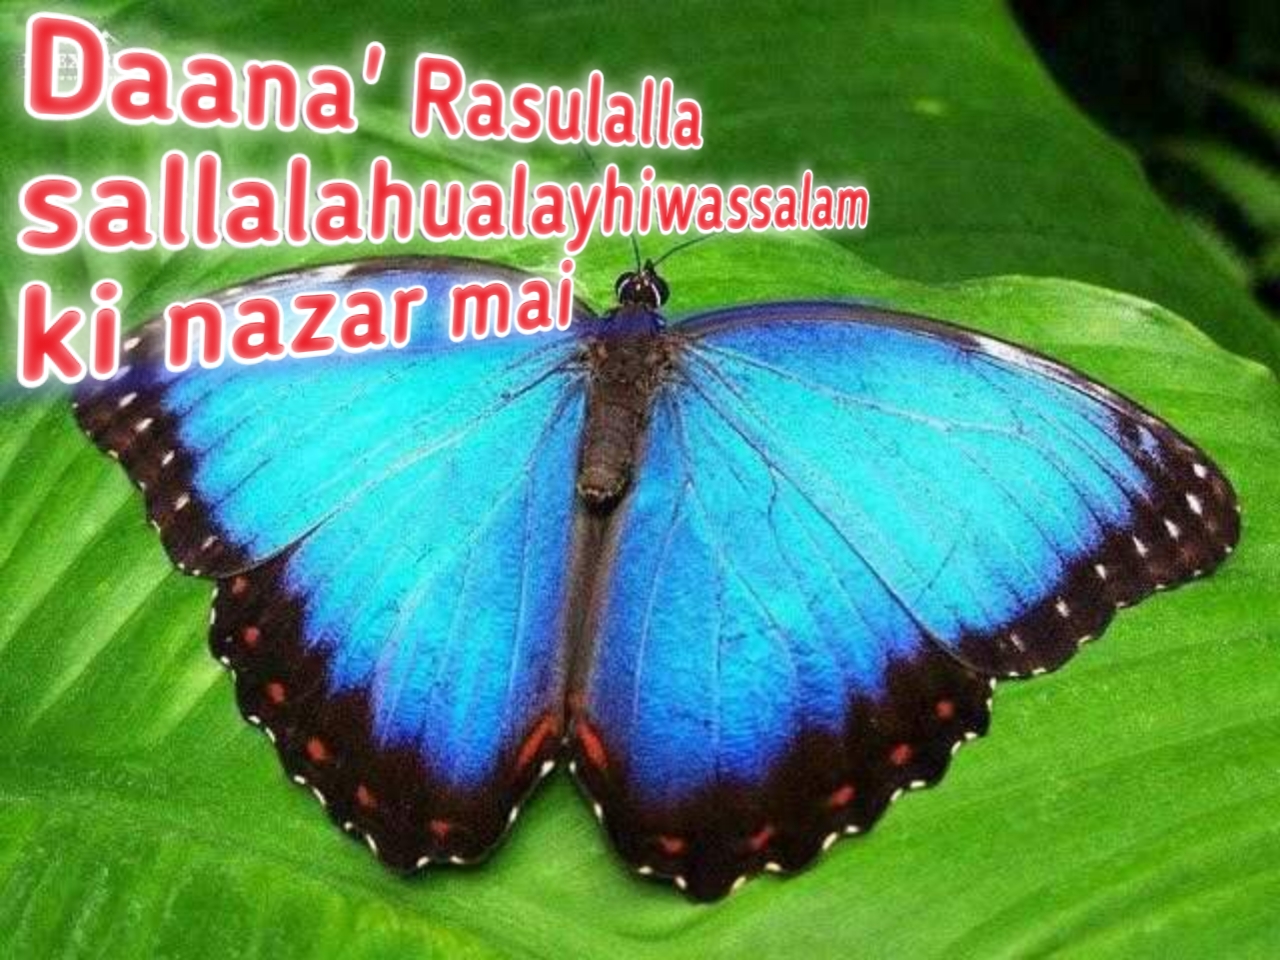 Welcome to Daana' Rasulalla sallalahualayhiwassalam ki nazar mai